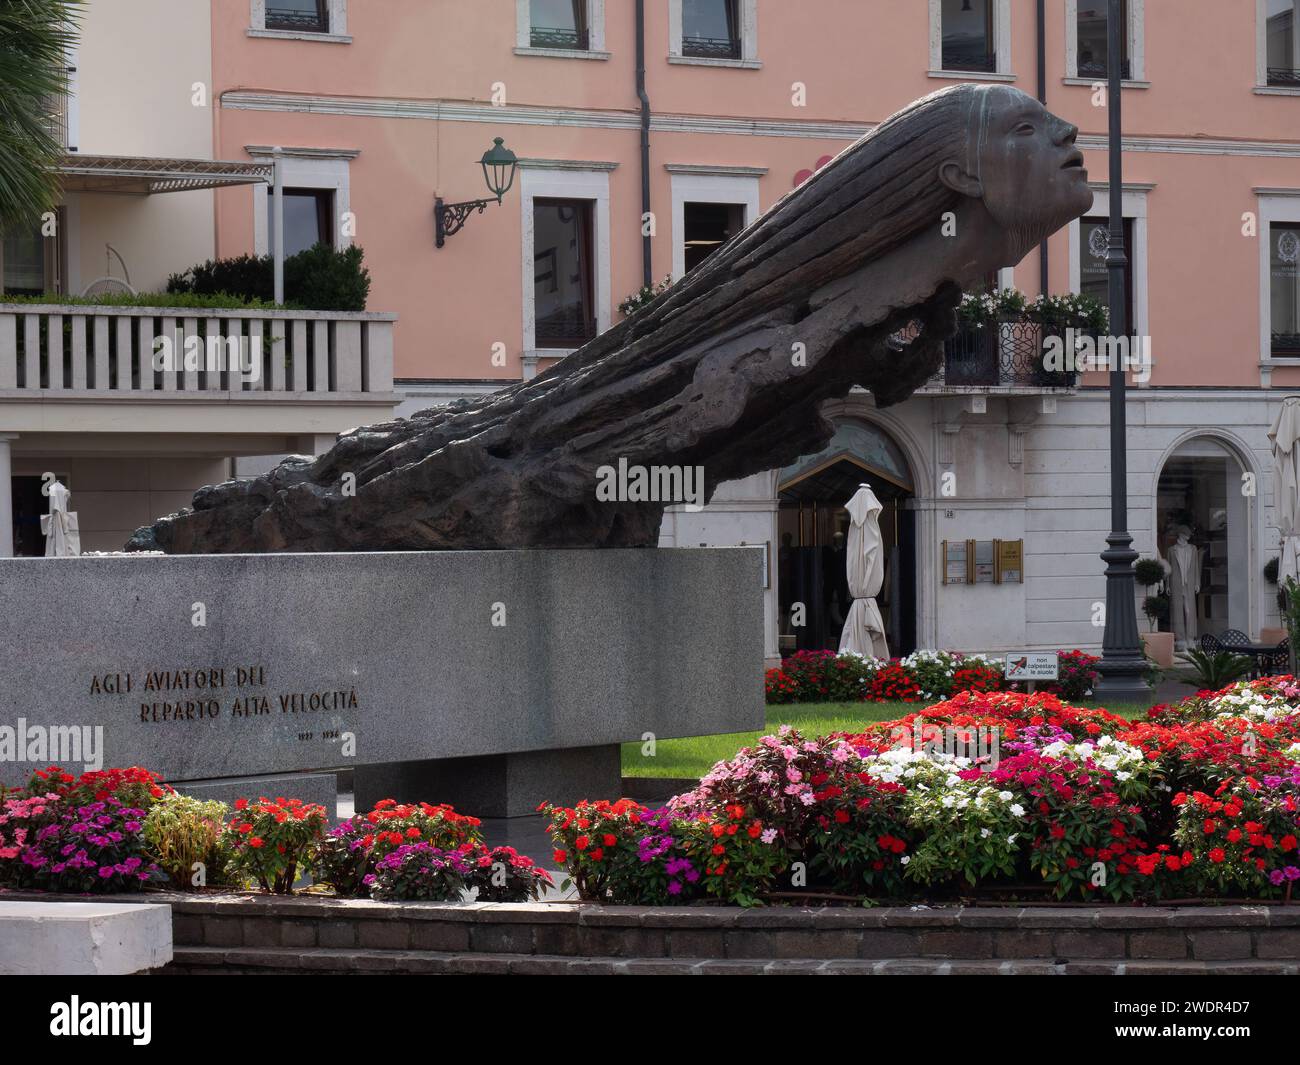 DESENZANO DEL GARDA, ITALIA - 22 SETTEMBRE 2023: Monumento dedicato ai coraggiosi aviatori (Monumento agli aviatori del reparto alta velocità) a Piaz Foto Stock